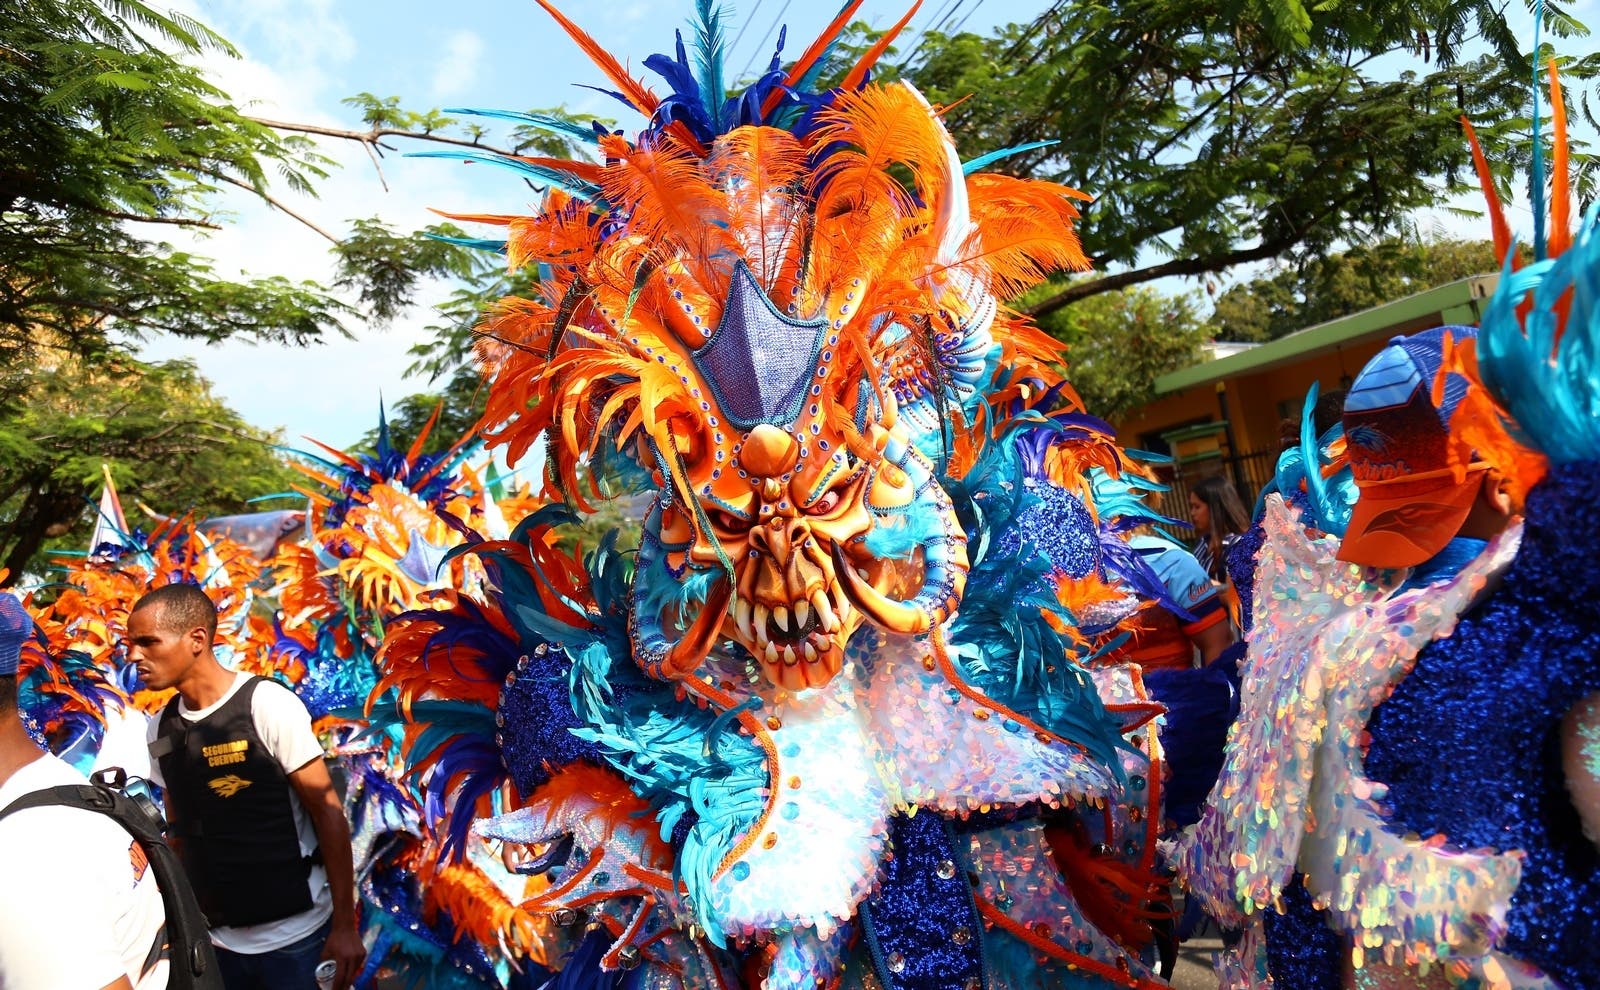 Carnaval Vegano culmina este domingo; asistentes disfrutan de creatividad